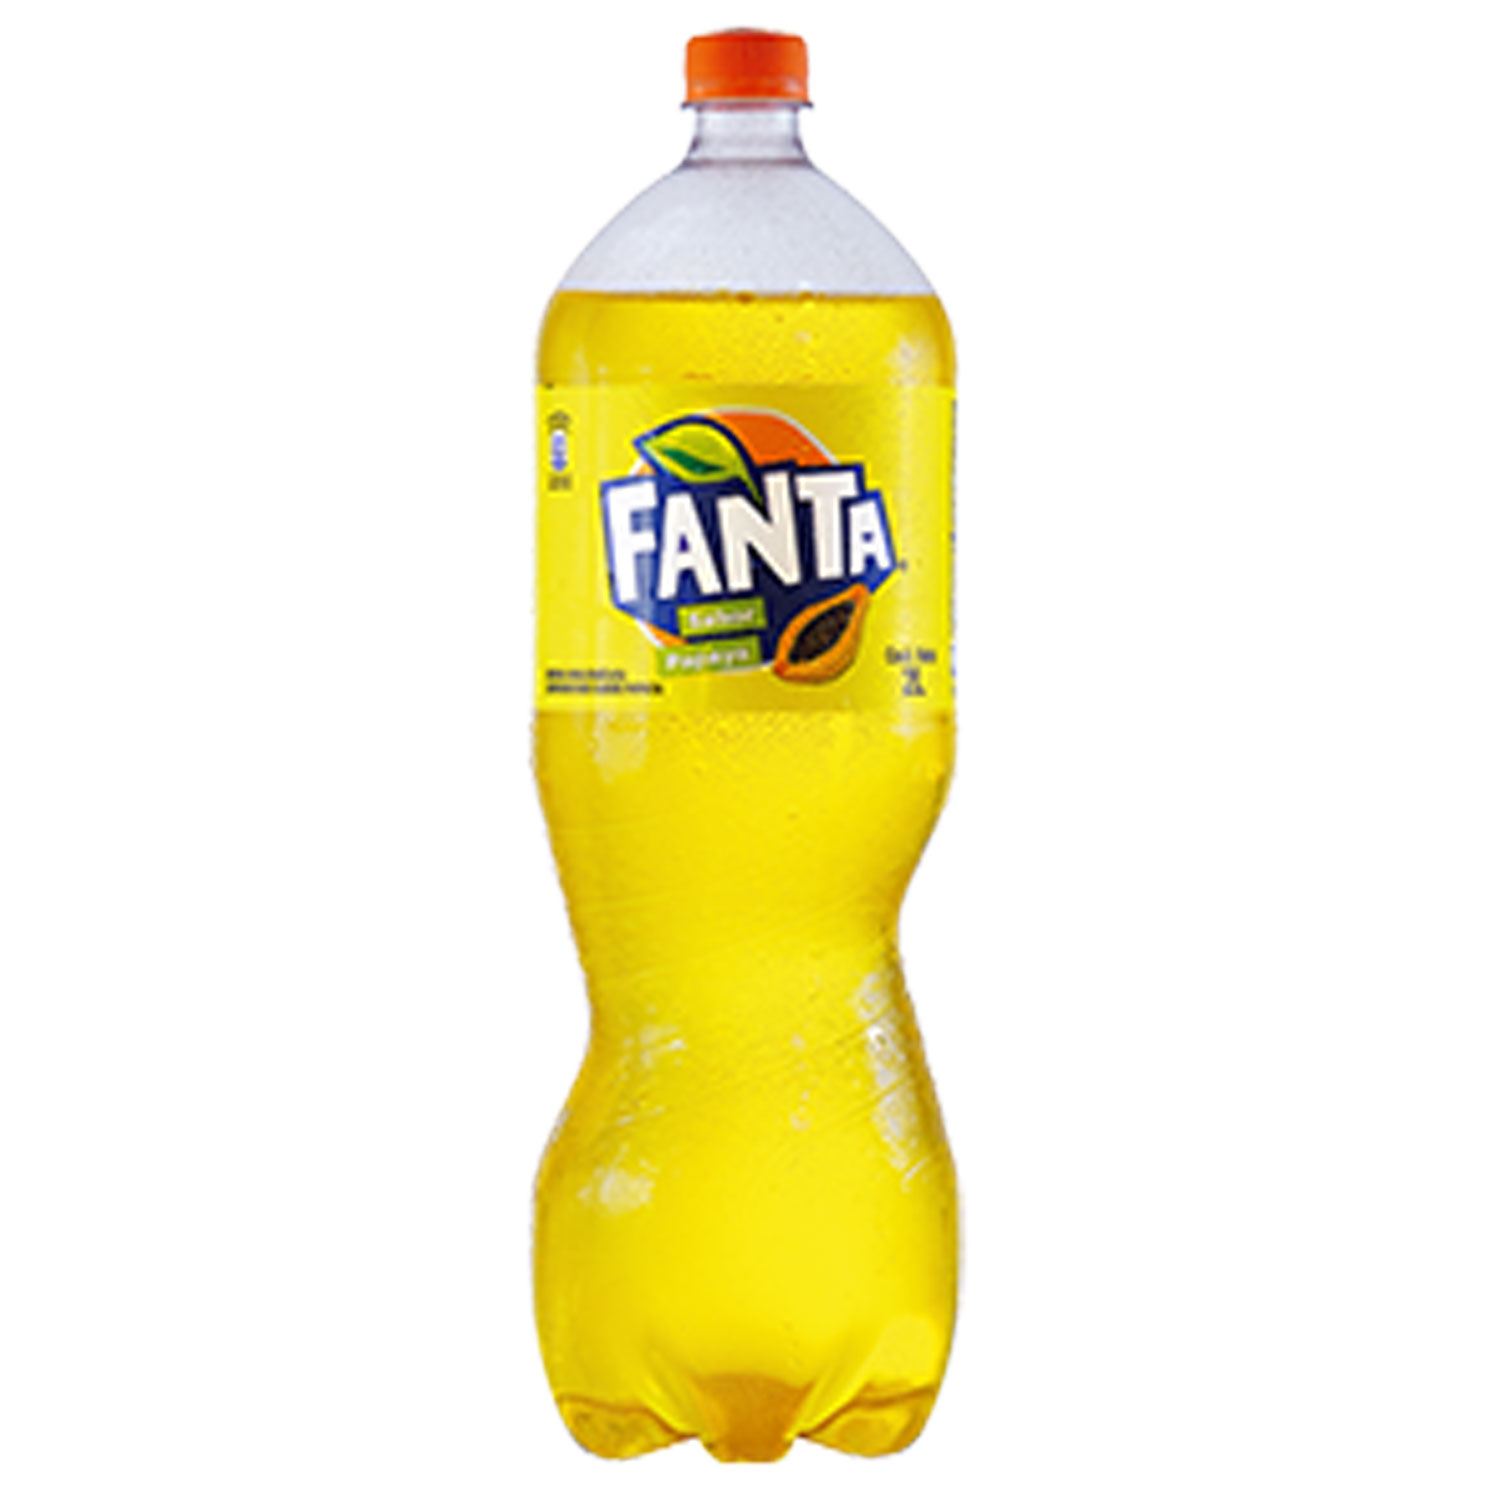 Botella de Fanta Papaya 2L